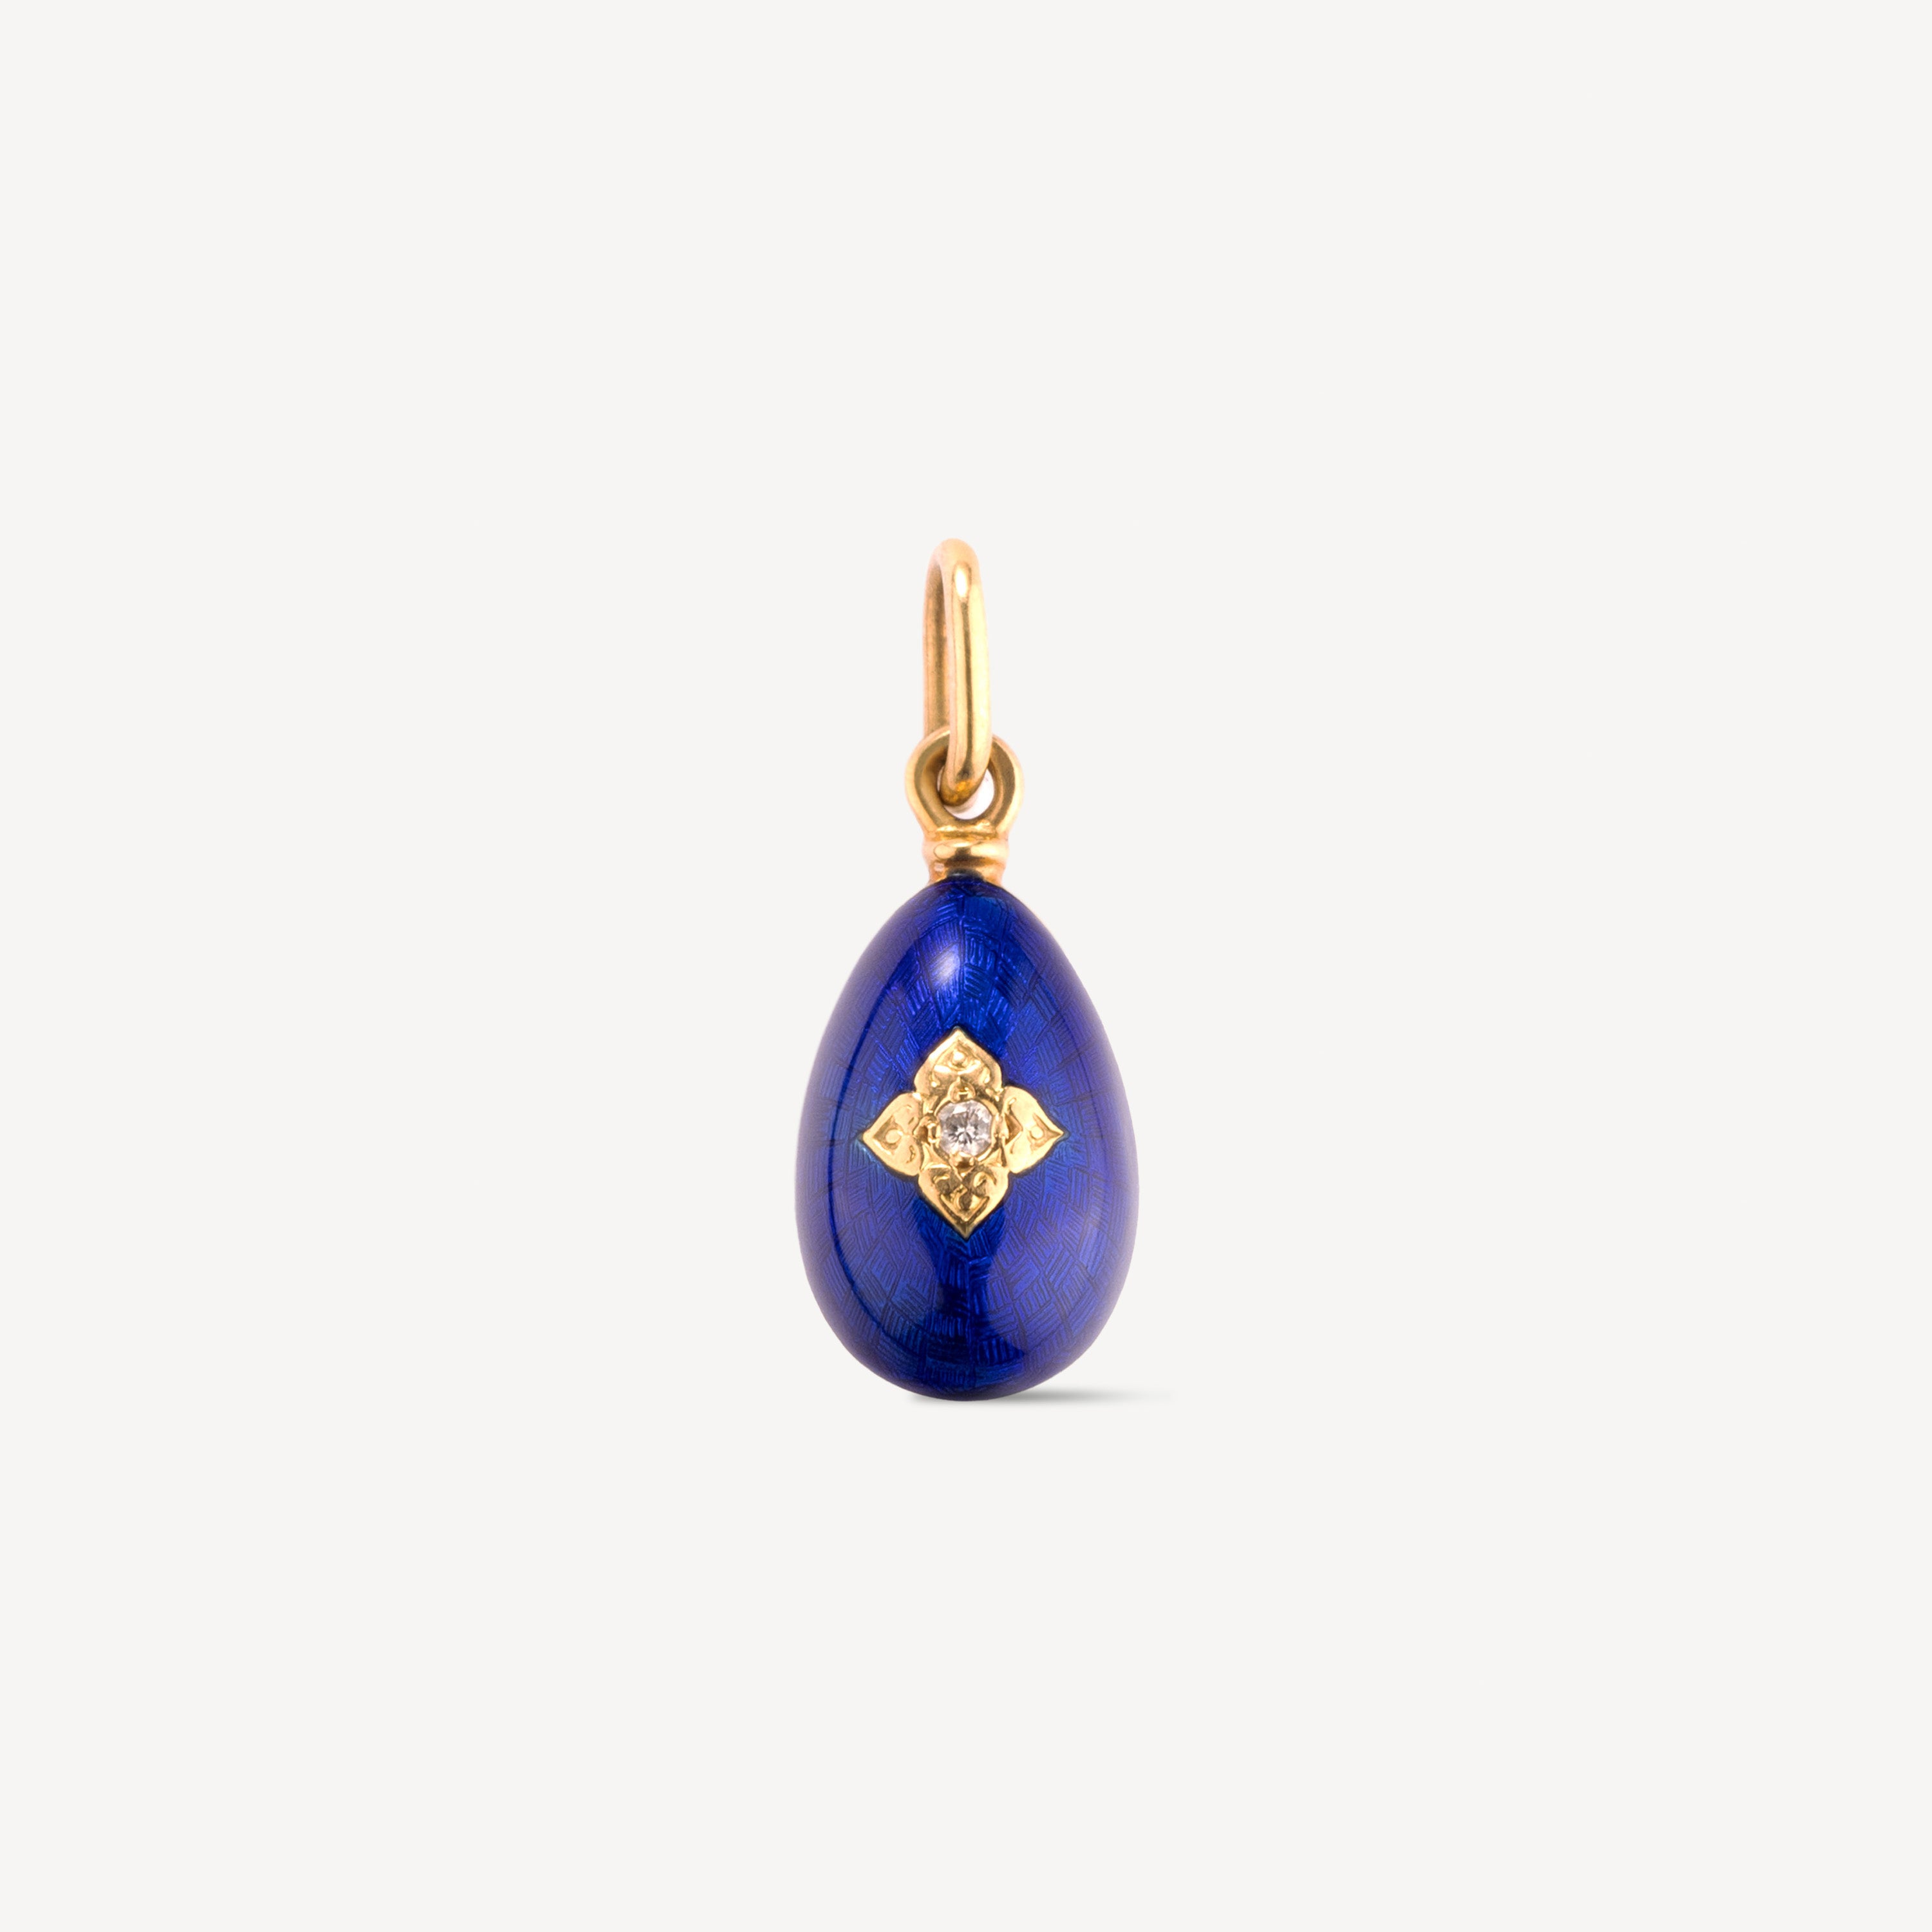 Blue Egg Clover pendant in gold